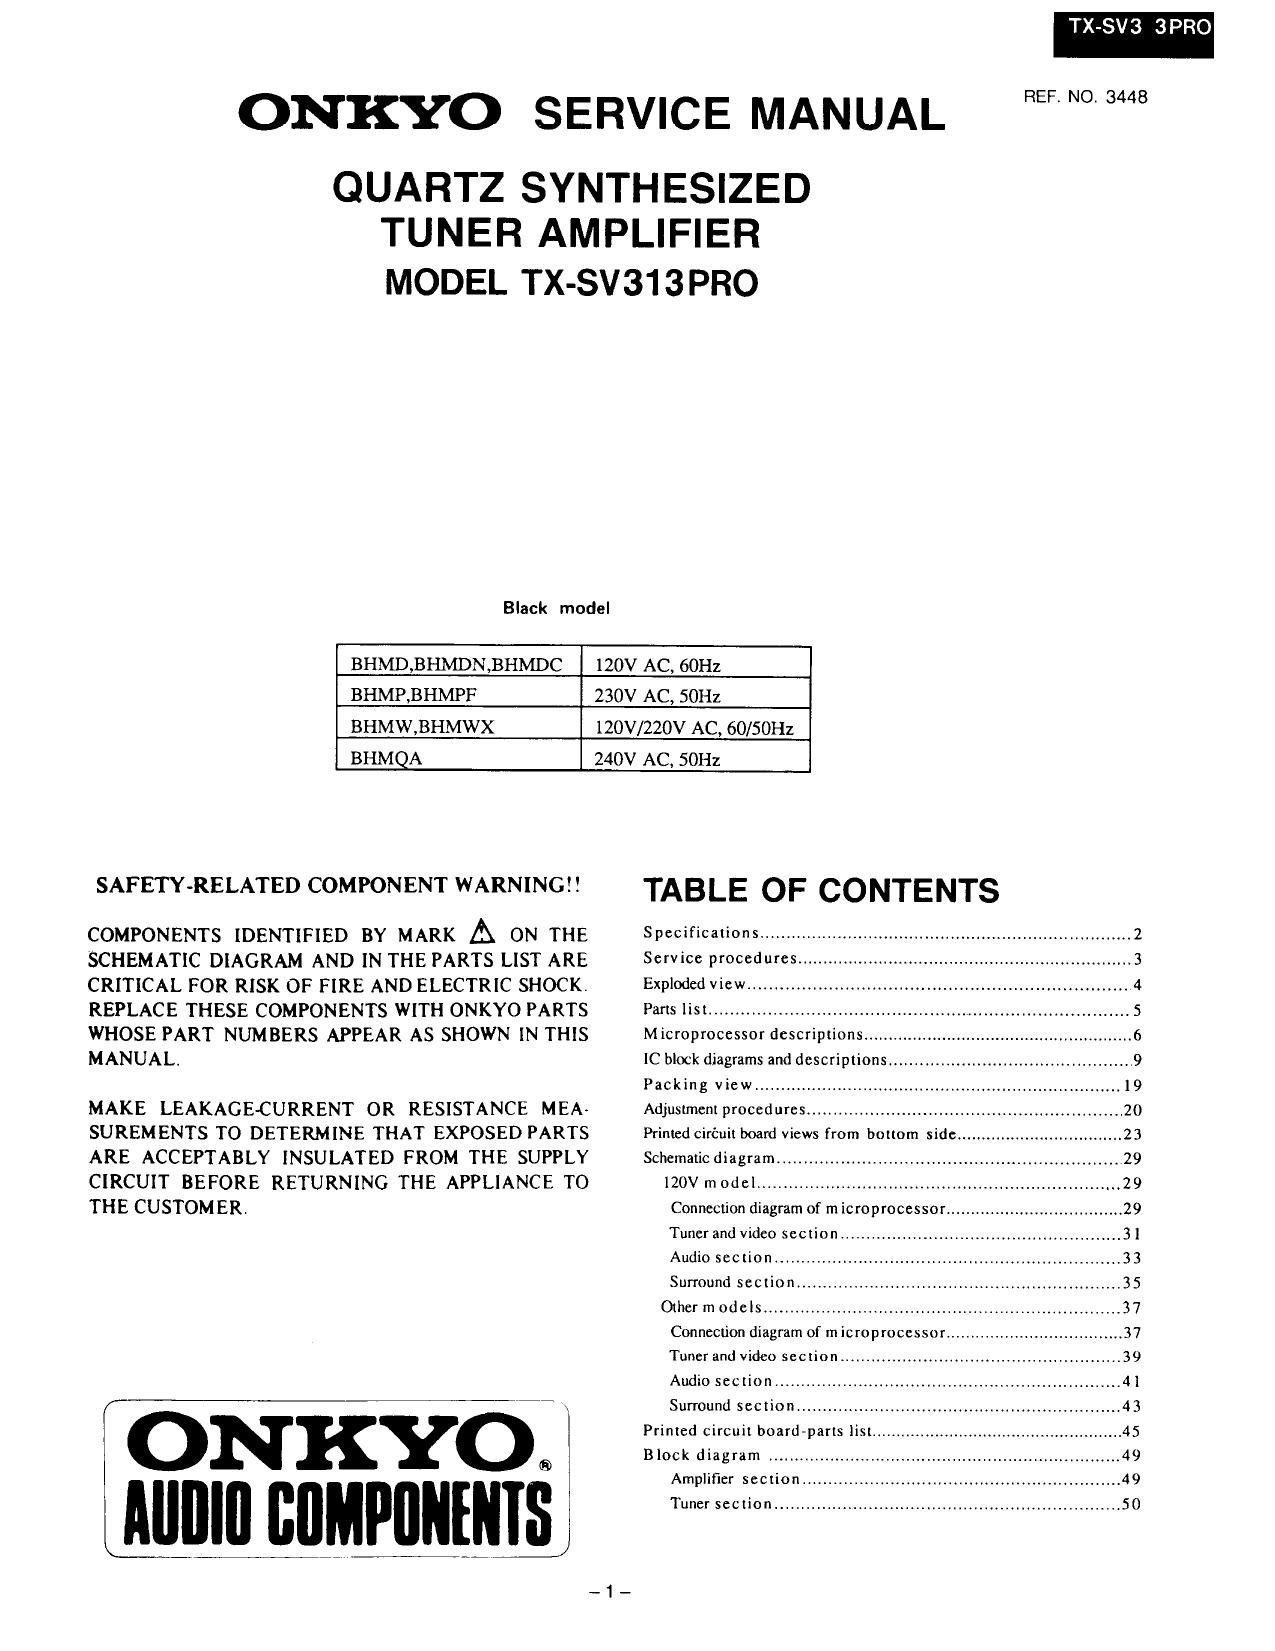 Onkyo TXSV 313 PRO Service Manual